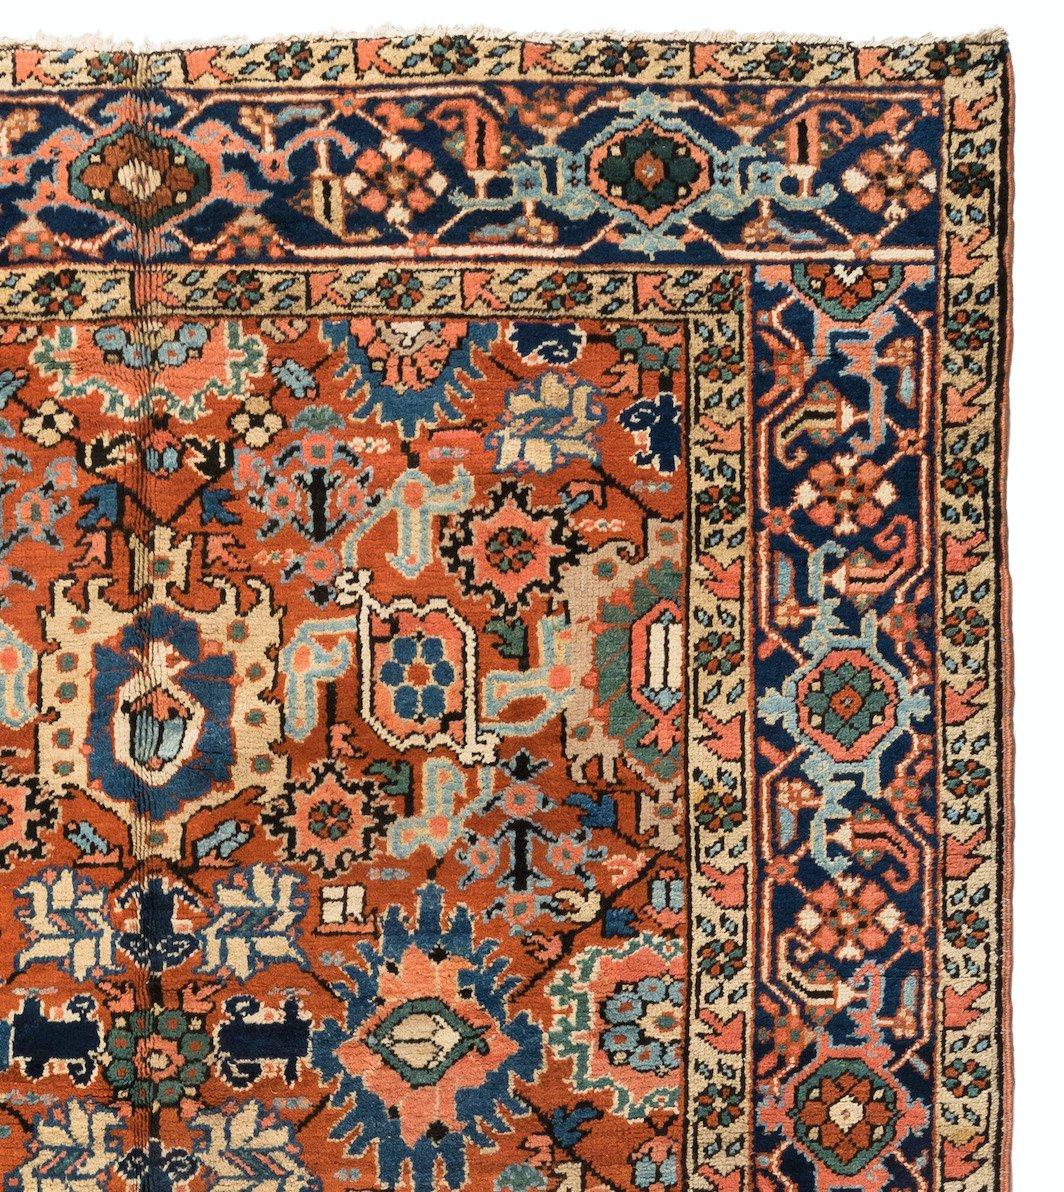 Heriz-Teppiche gehören zu den berühmtesten Teppichen aus dem Iran, da sie einen einzigartigen und unverwechselbaren Stil haben. Heriz ist eine Stadt im Nordwesten Irans, in der Nähe der Stadt Tabriz, die ein wichtiges Zentrum der Teppichweberei im